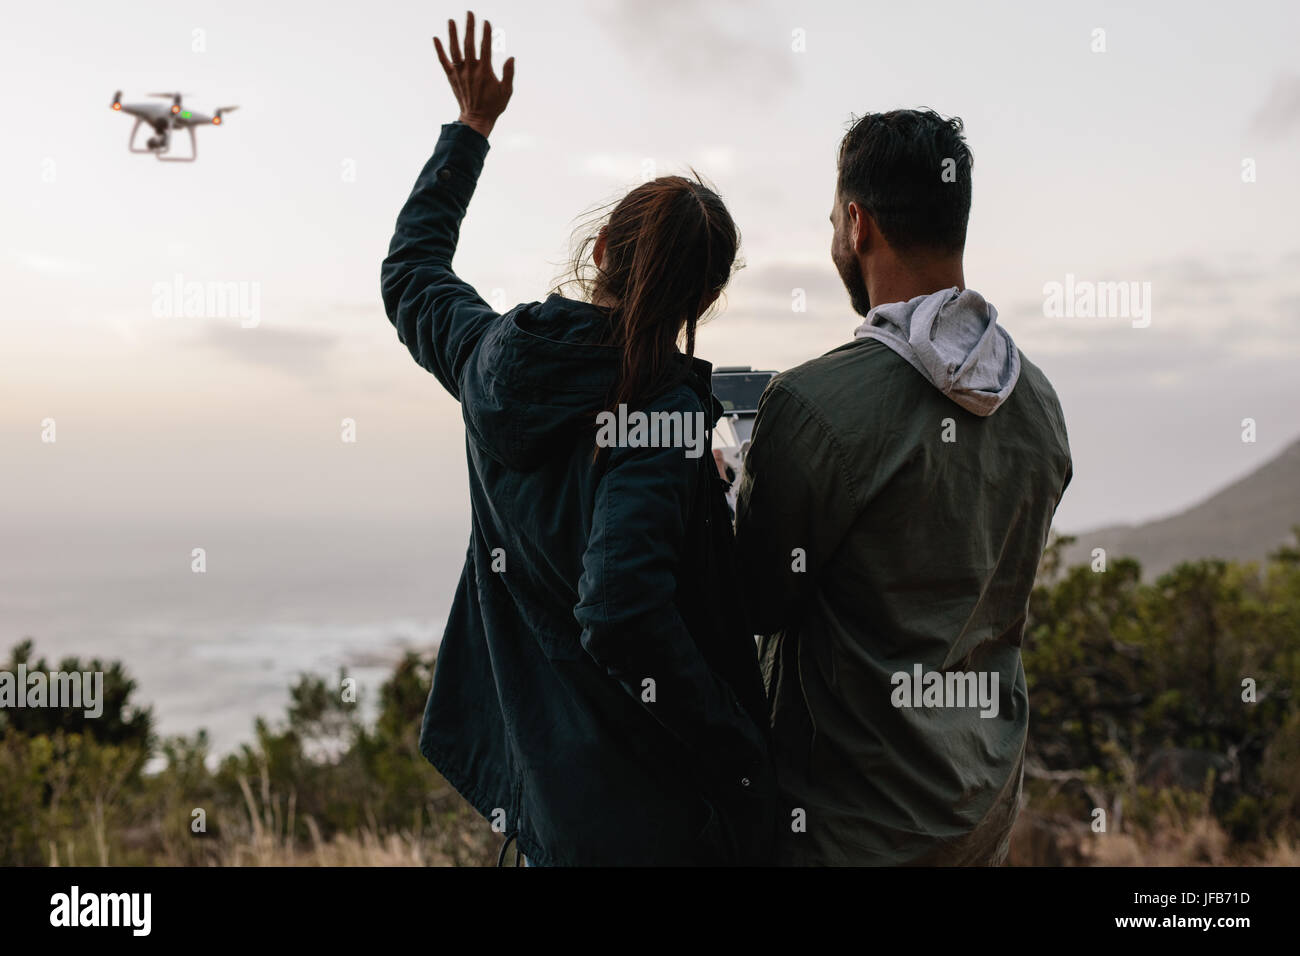 Im Freien Schuss des jungen Paares in ländlichen und sprechen selbst fotografieren mit einer fliegenden Drohne zusammenstehen. Stockfoto